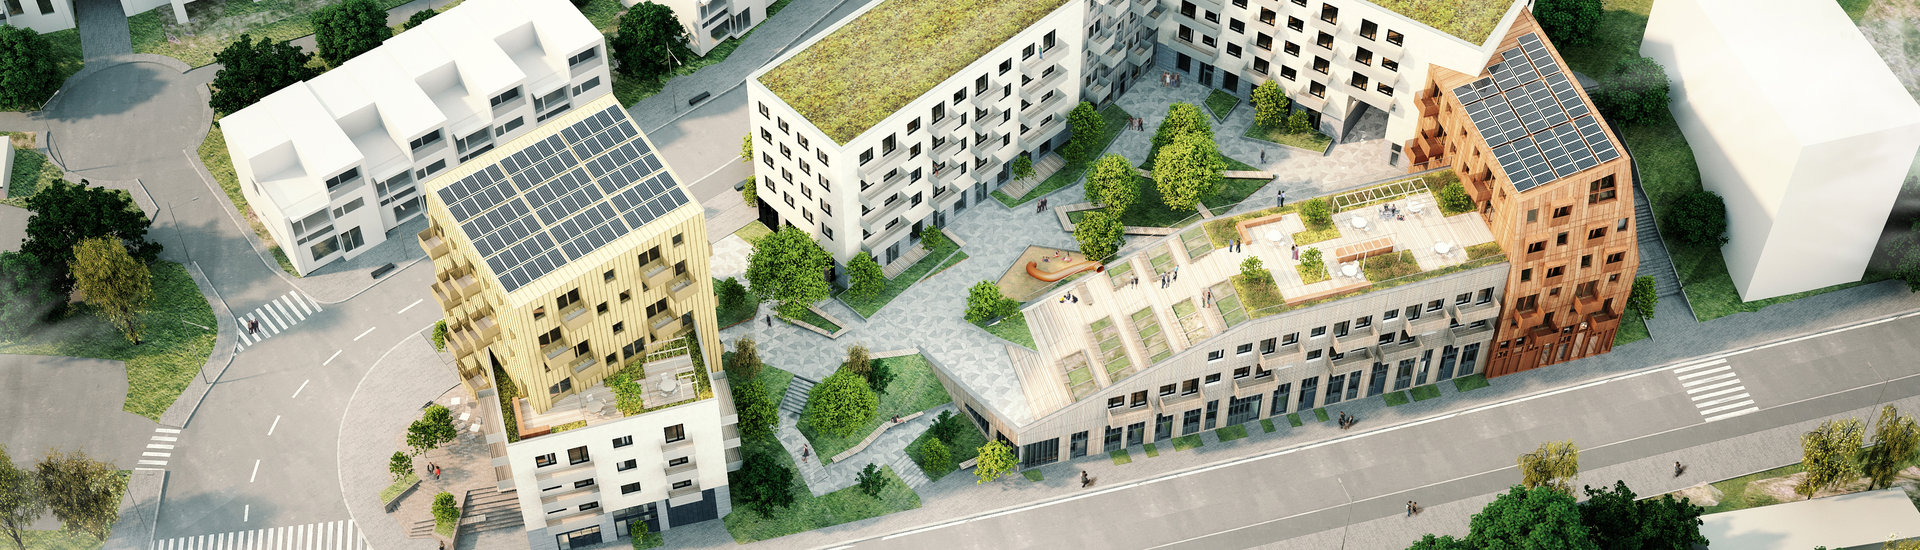 Översiktsbild över ett triangulärt bostadskvarter med 7 hus i skala mellan 3-7 våningar, runt en innergård. Gröna tak och solpaneler. 